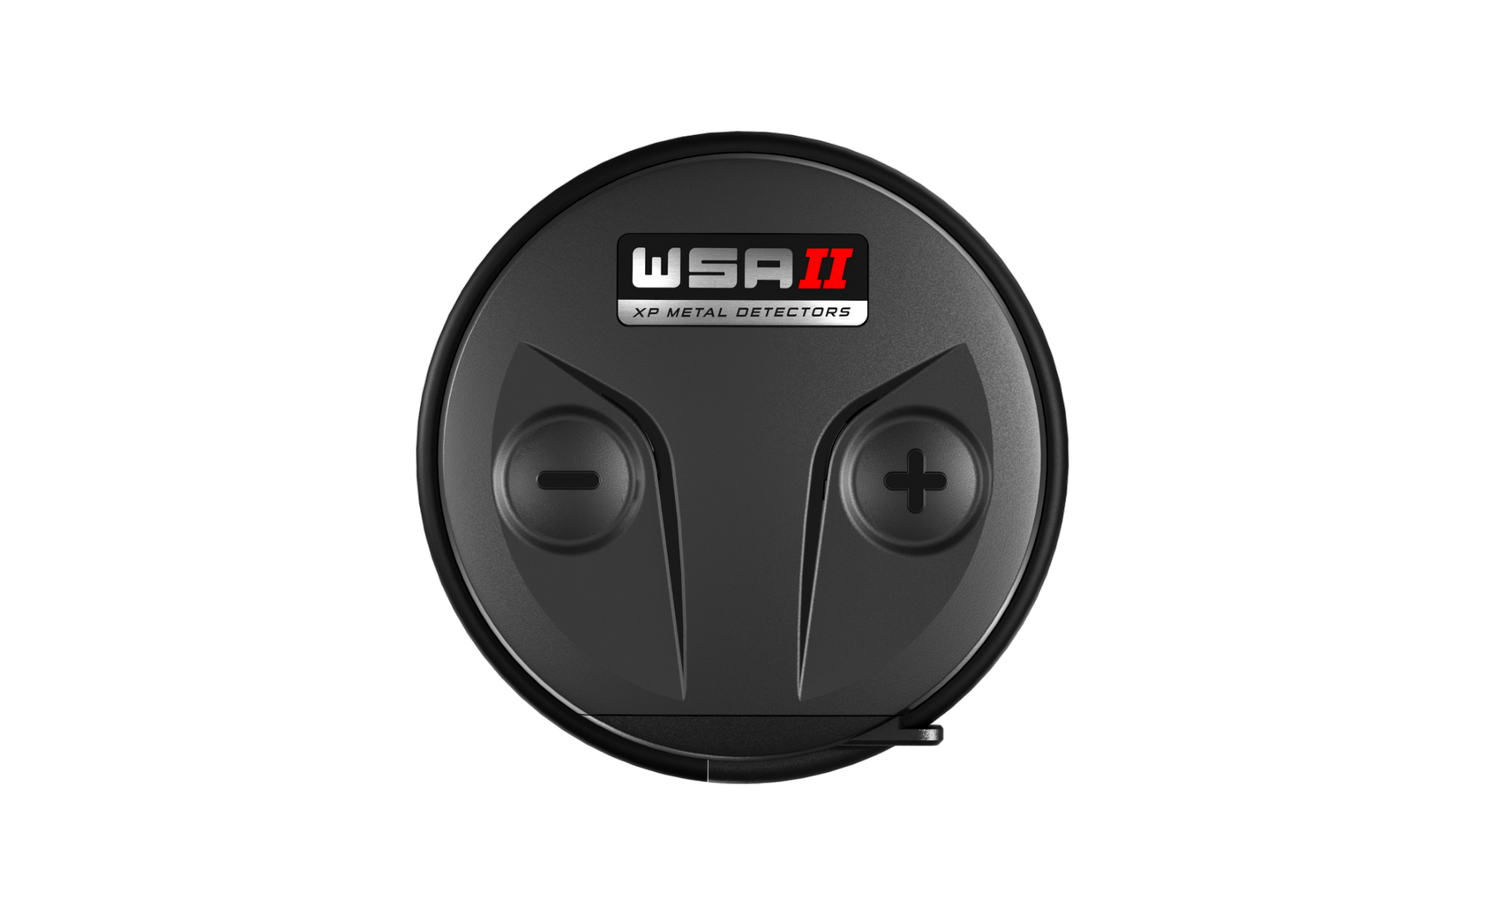 WSA-II Wireless Headphones For Deus 2